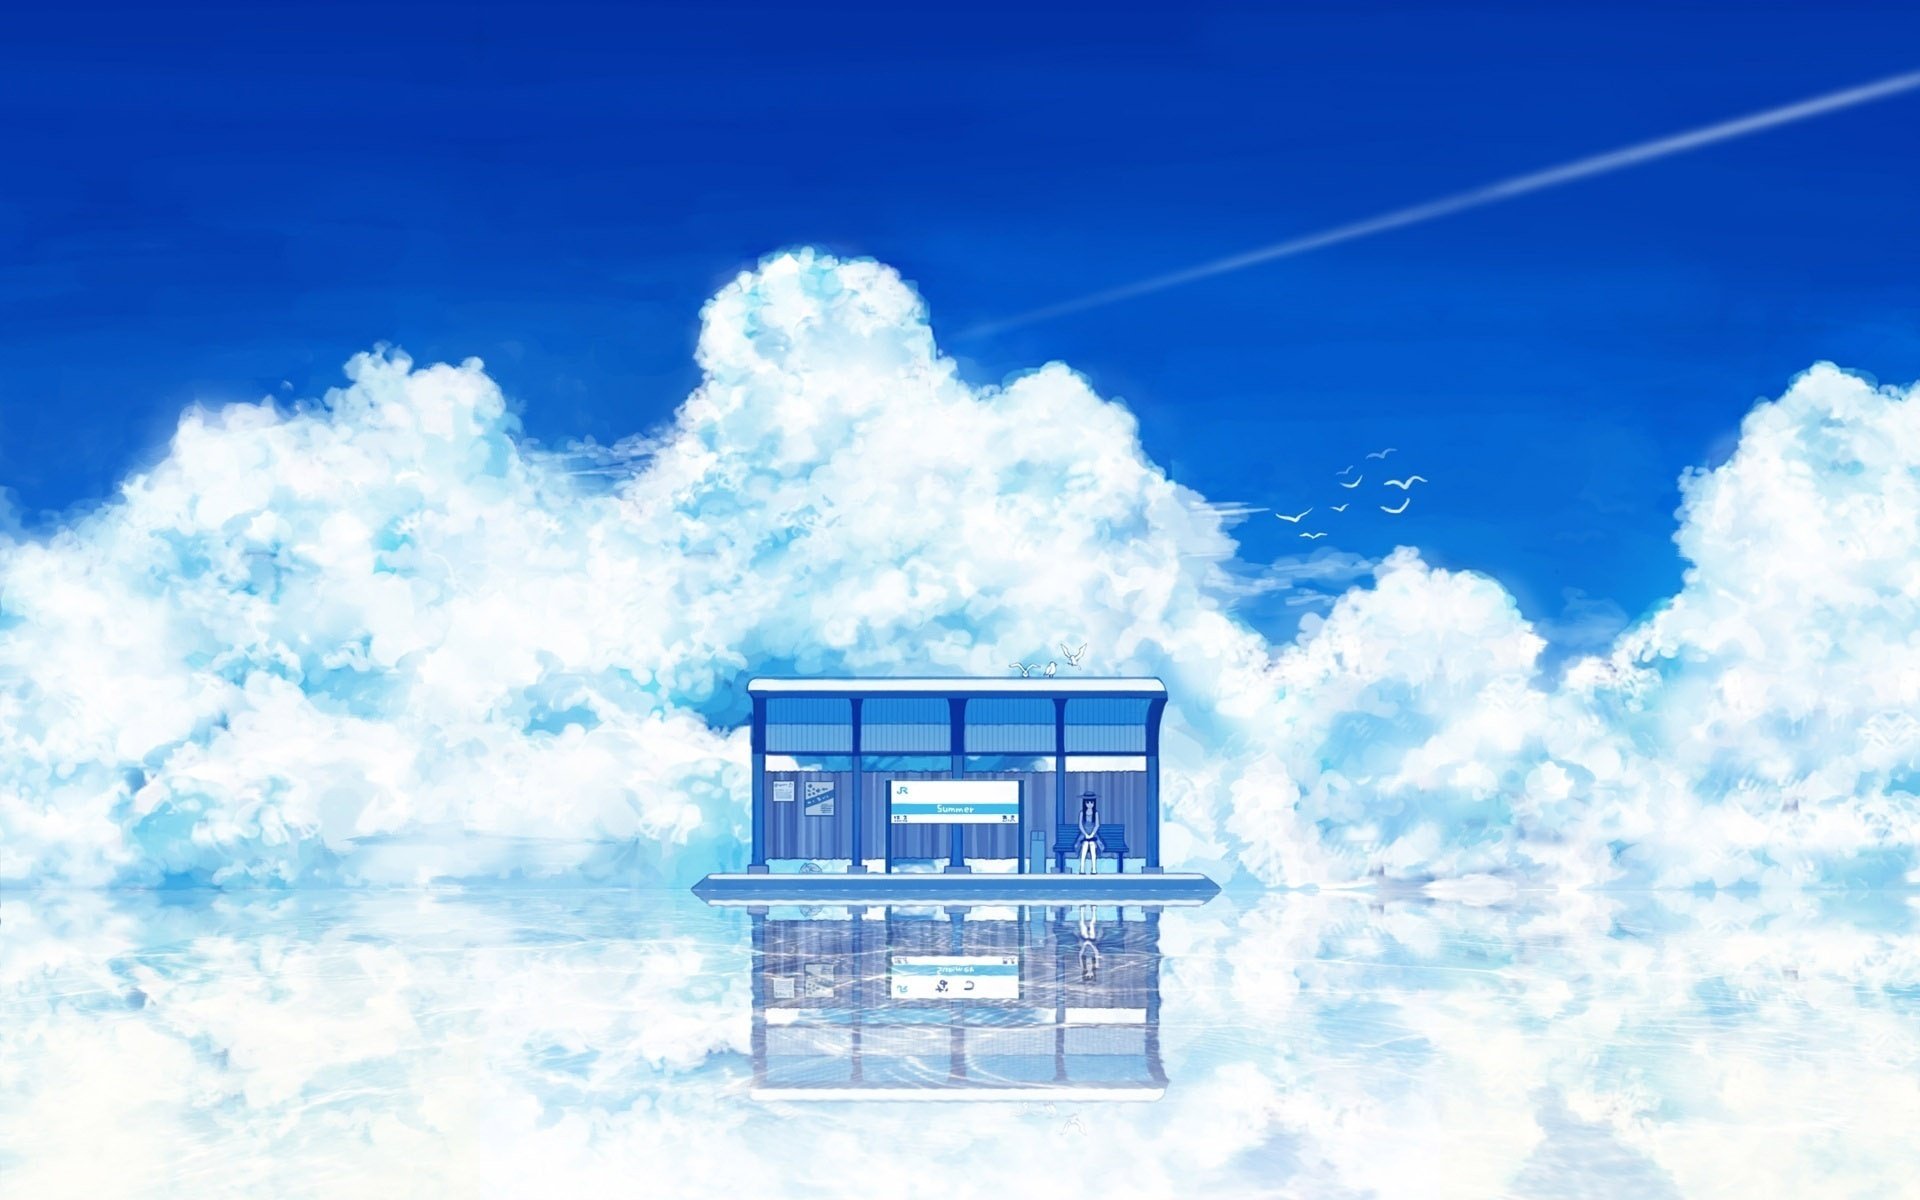 Синий дом в зеркальной глади облаков